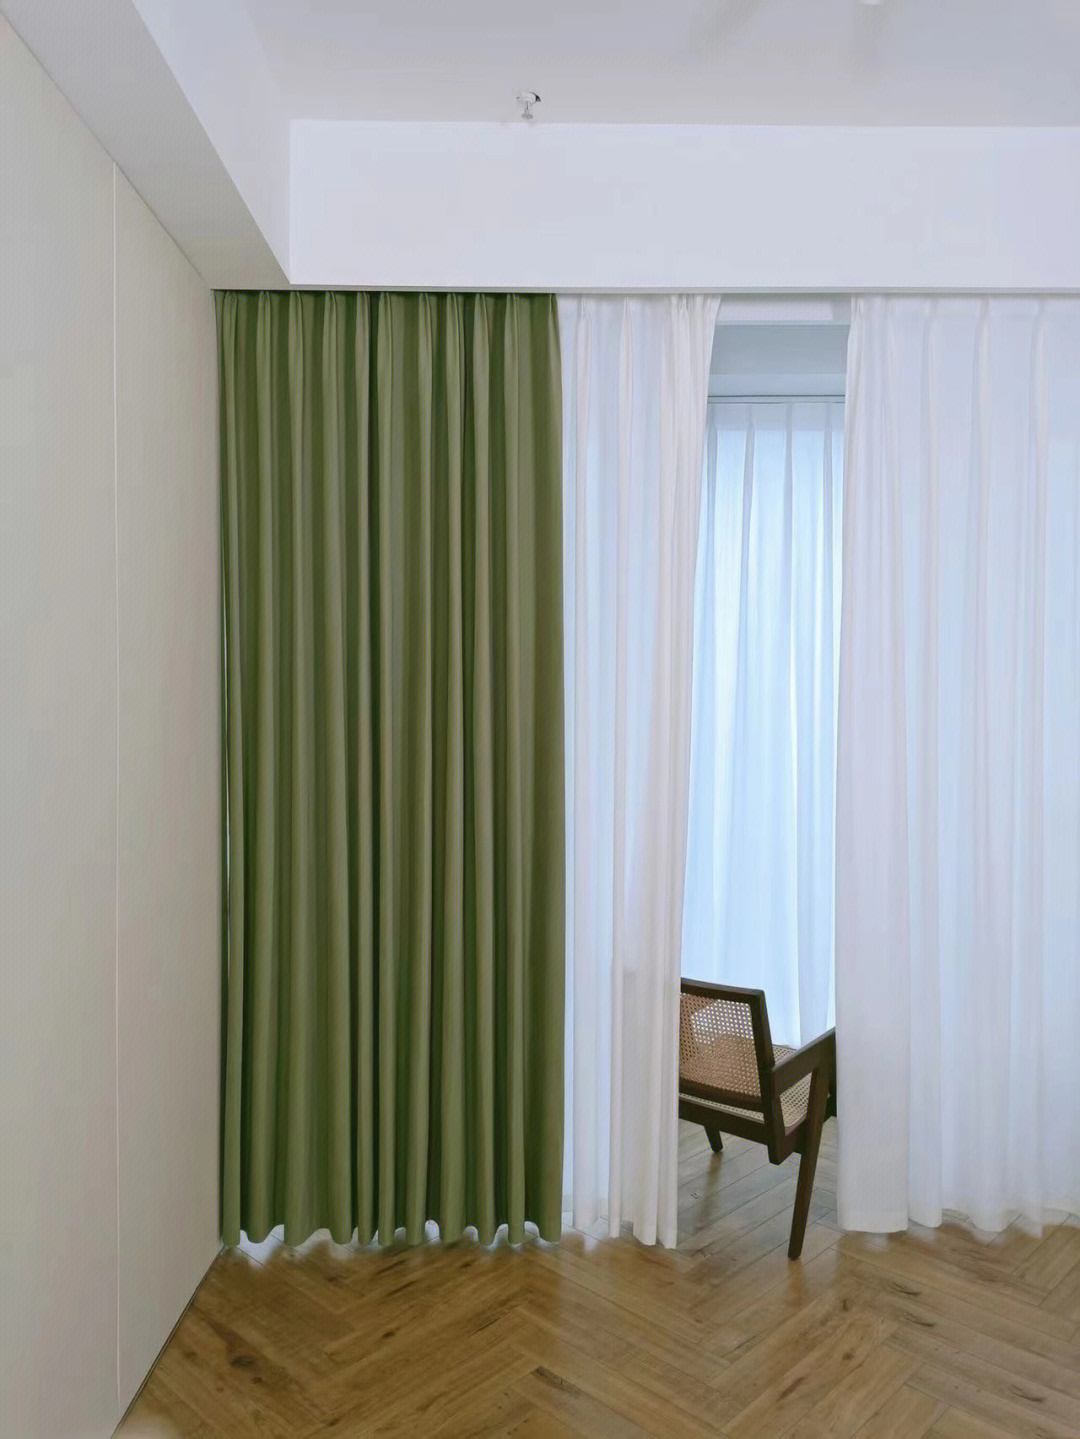 薄荷绿房间窗帘搭配图片